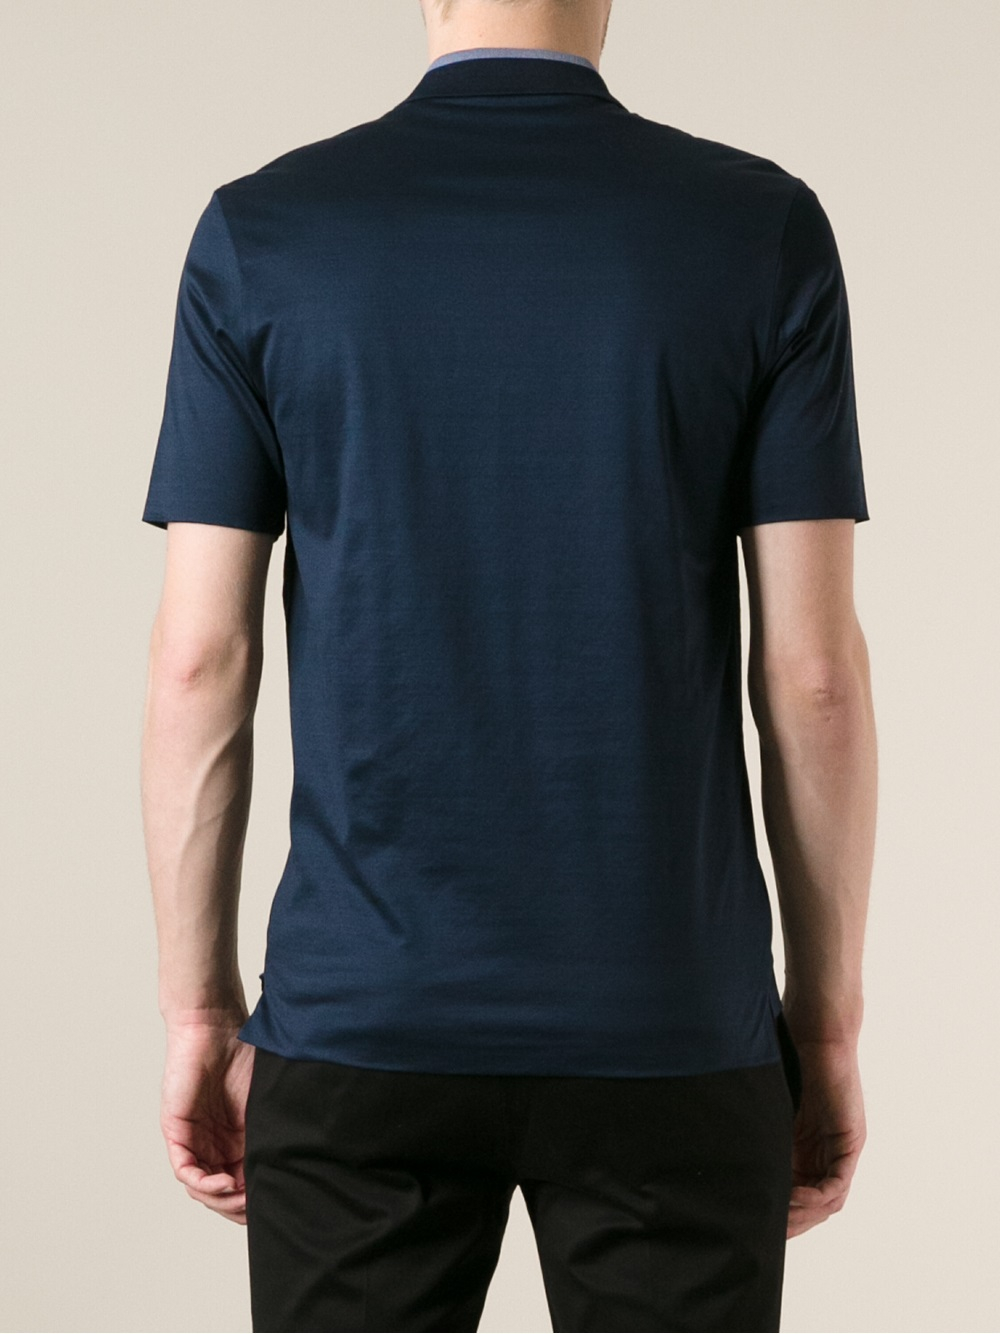 Balenciaga Reversible Polo Shirt in Blue for Men - Lyst